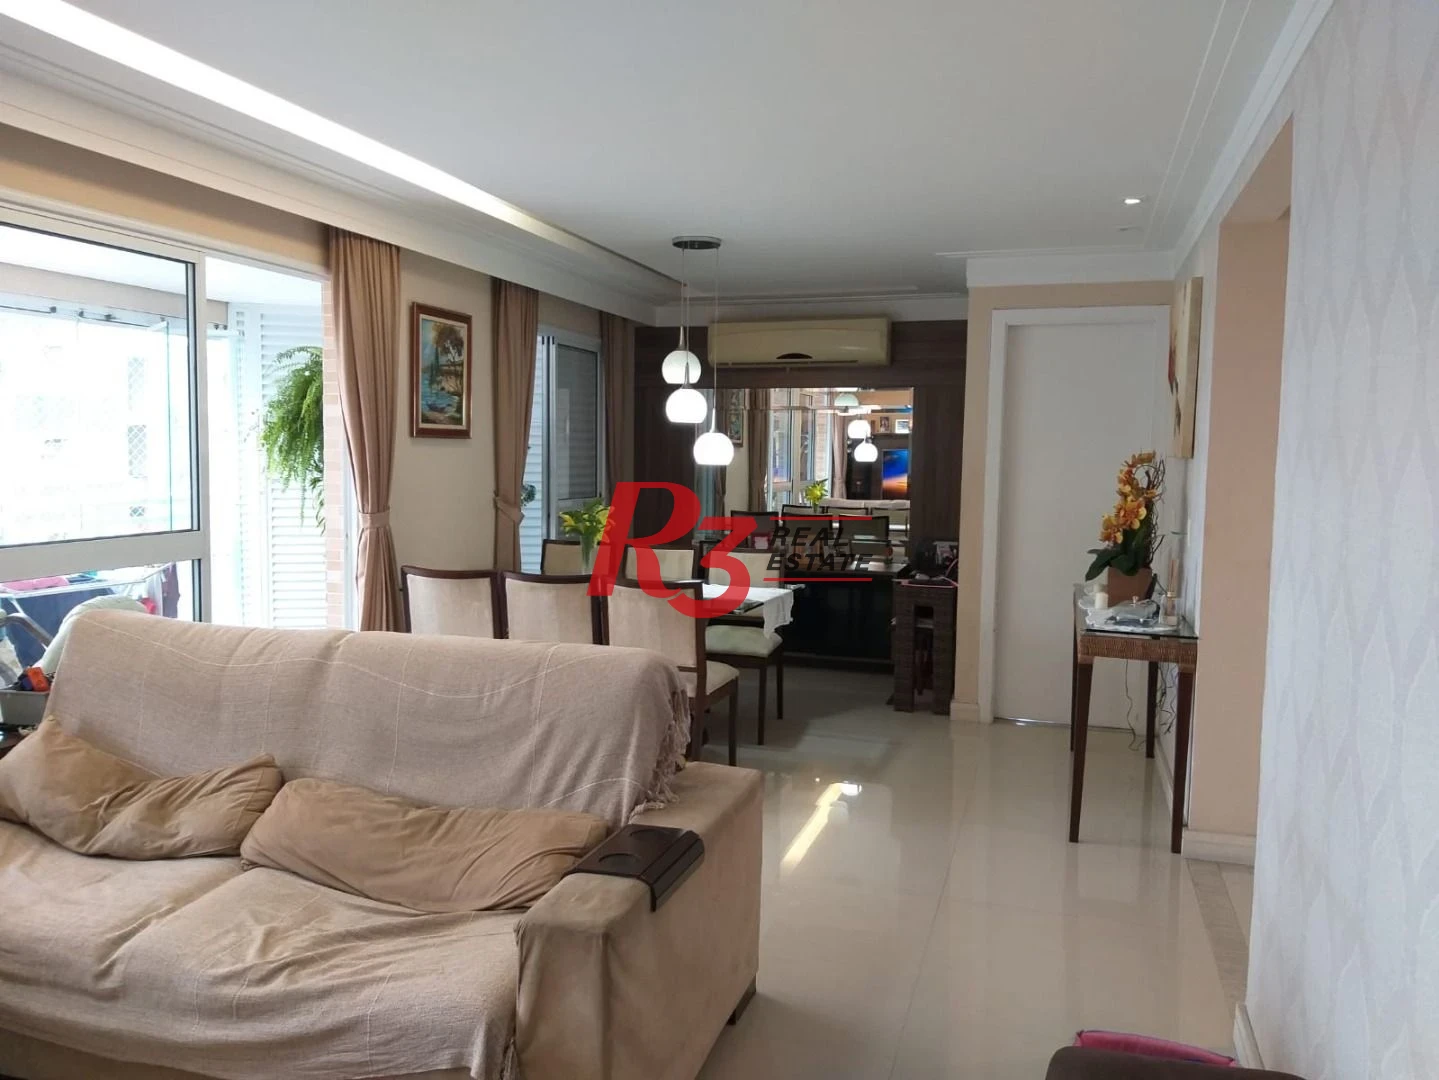 Apartamento com 3 dormitórios à venda, 130 m² por R$ 1.900.000,00 - Gonzaga - Santos/SP